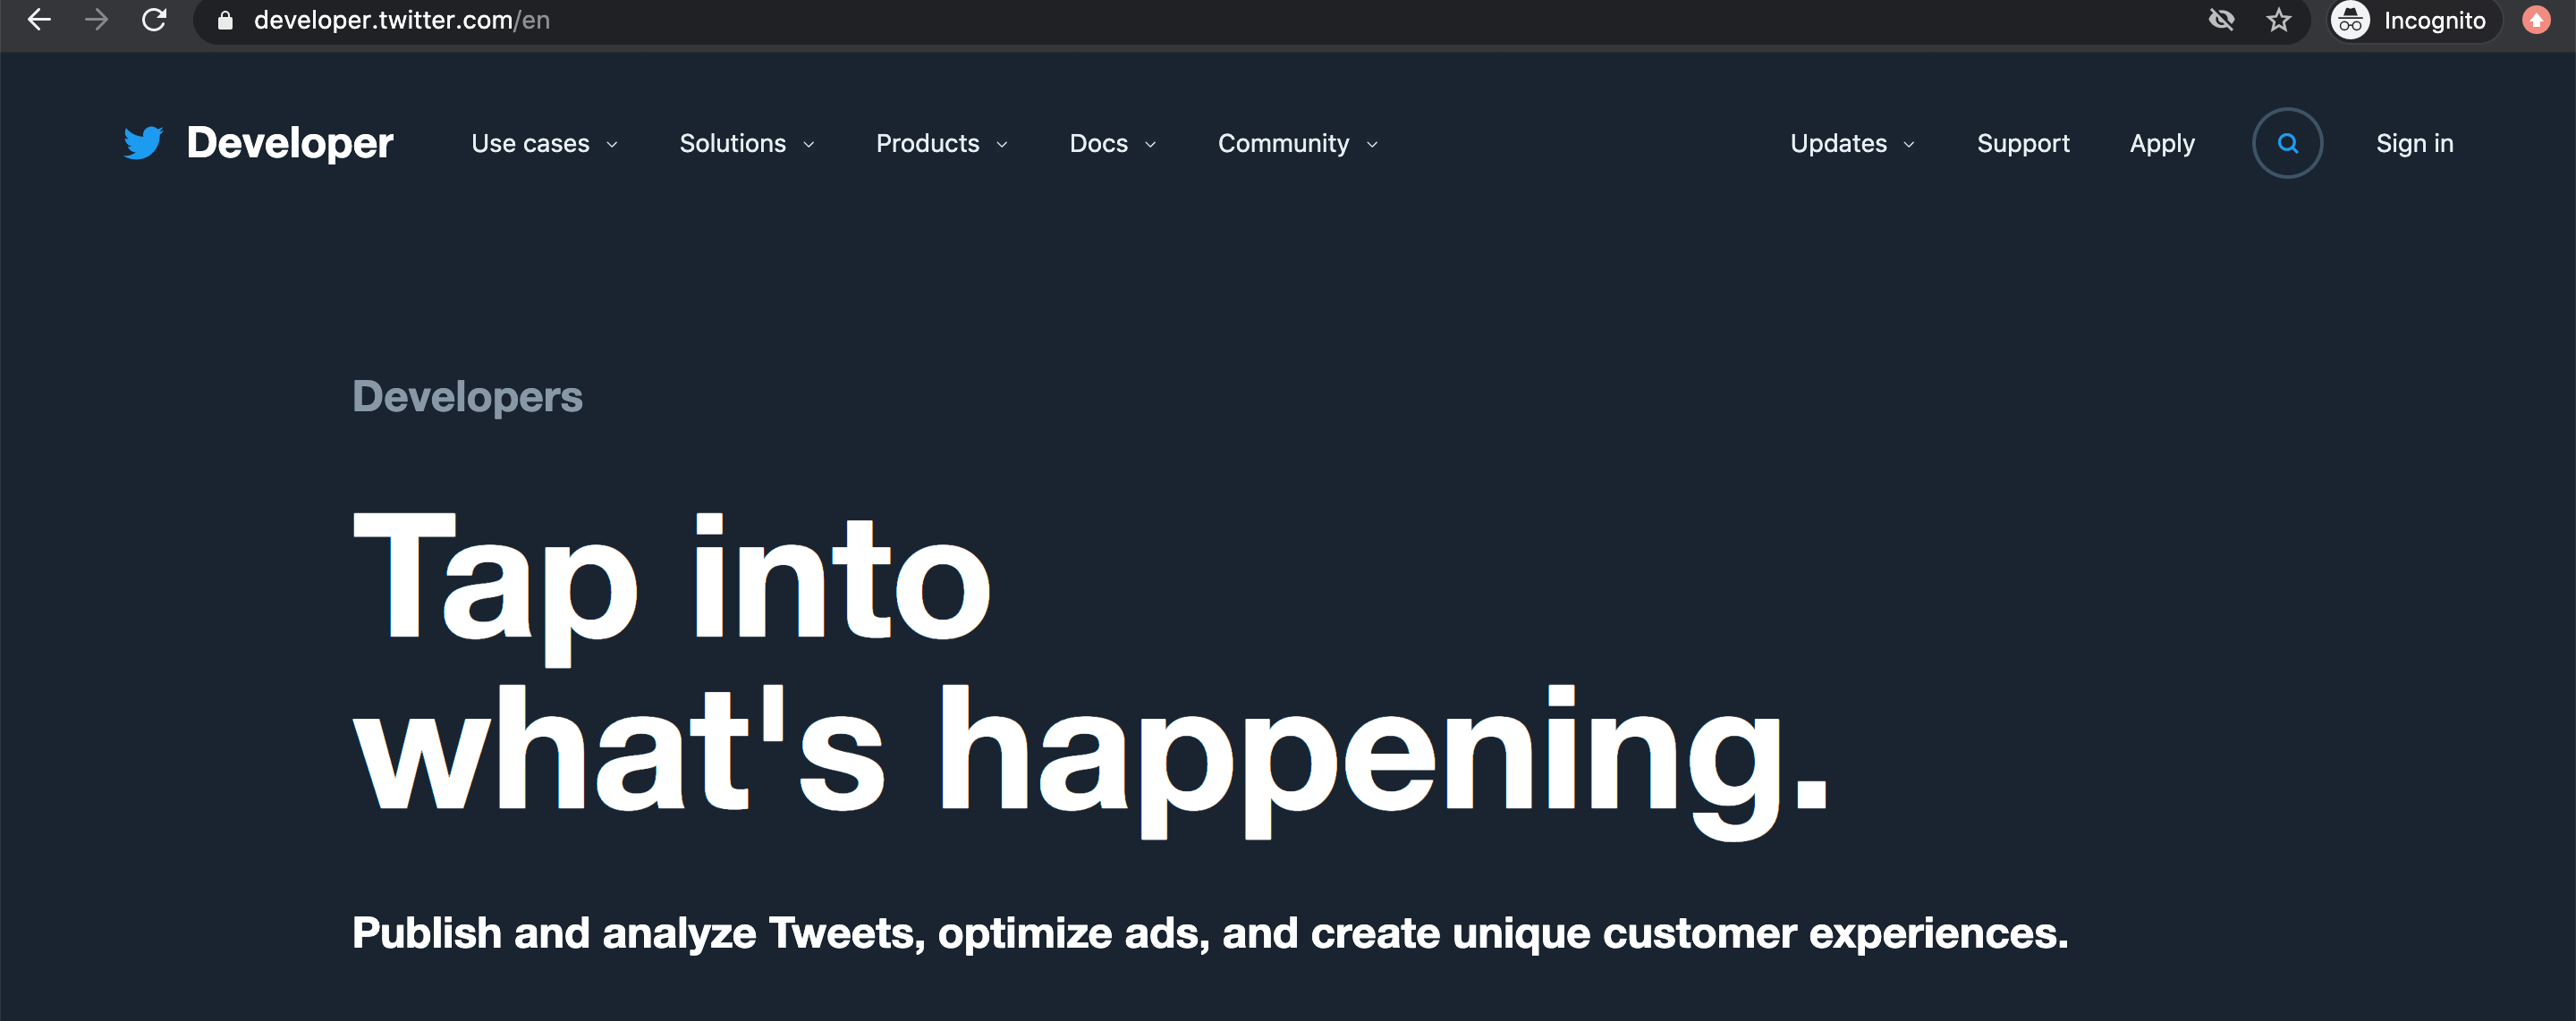 Developer Twitter Website